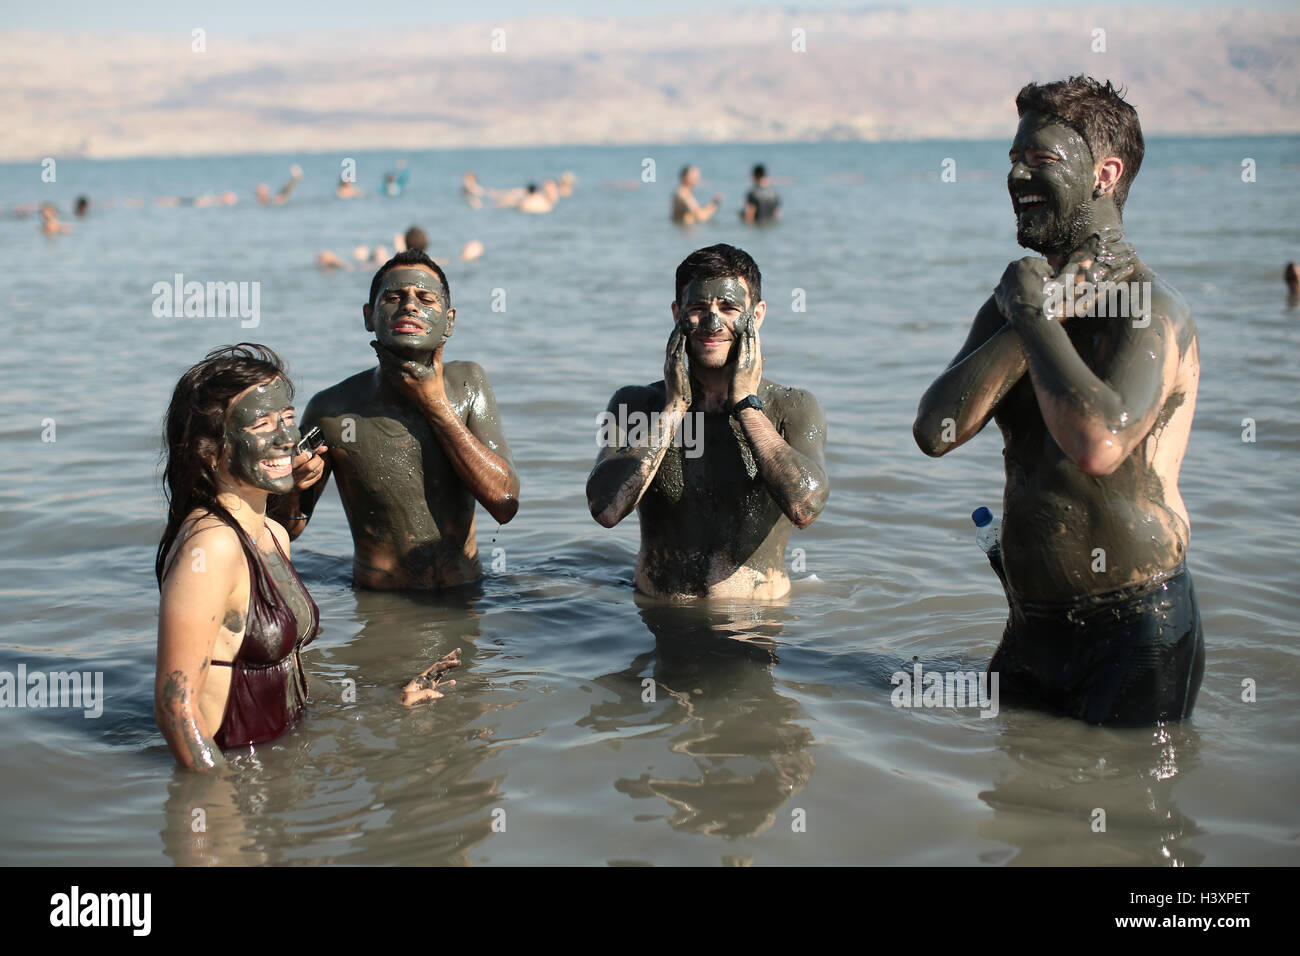 Les baigneurs dans la mer Morte se couvrir de boue, qui est réputé pour avoir des effets bénéfiques pour la peau. À partir d'une série de phot Banque D'Images